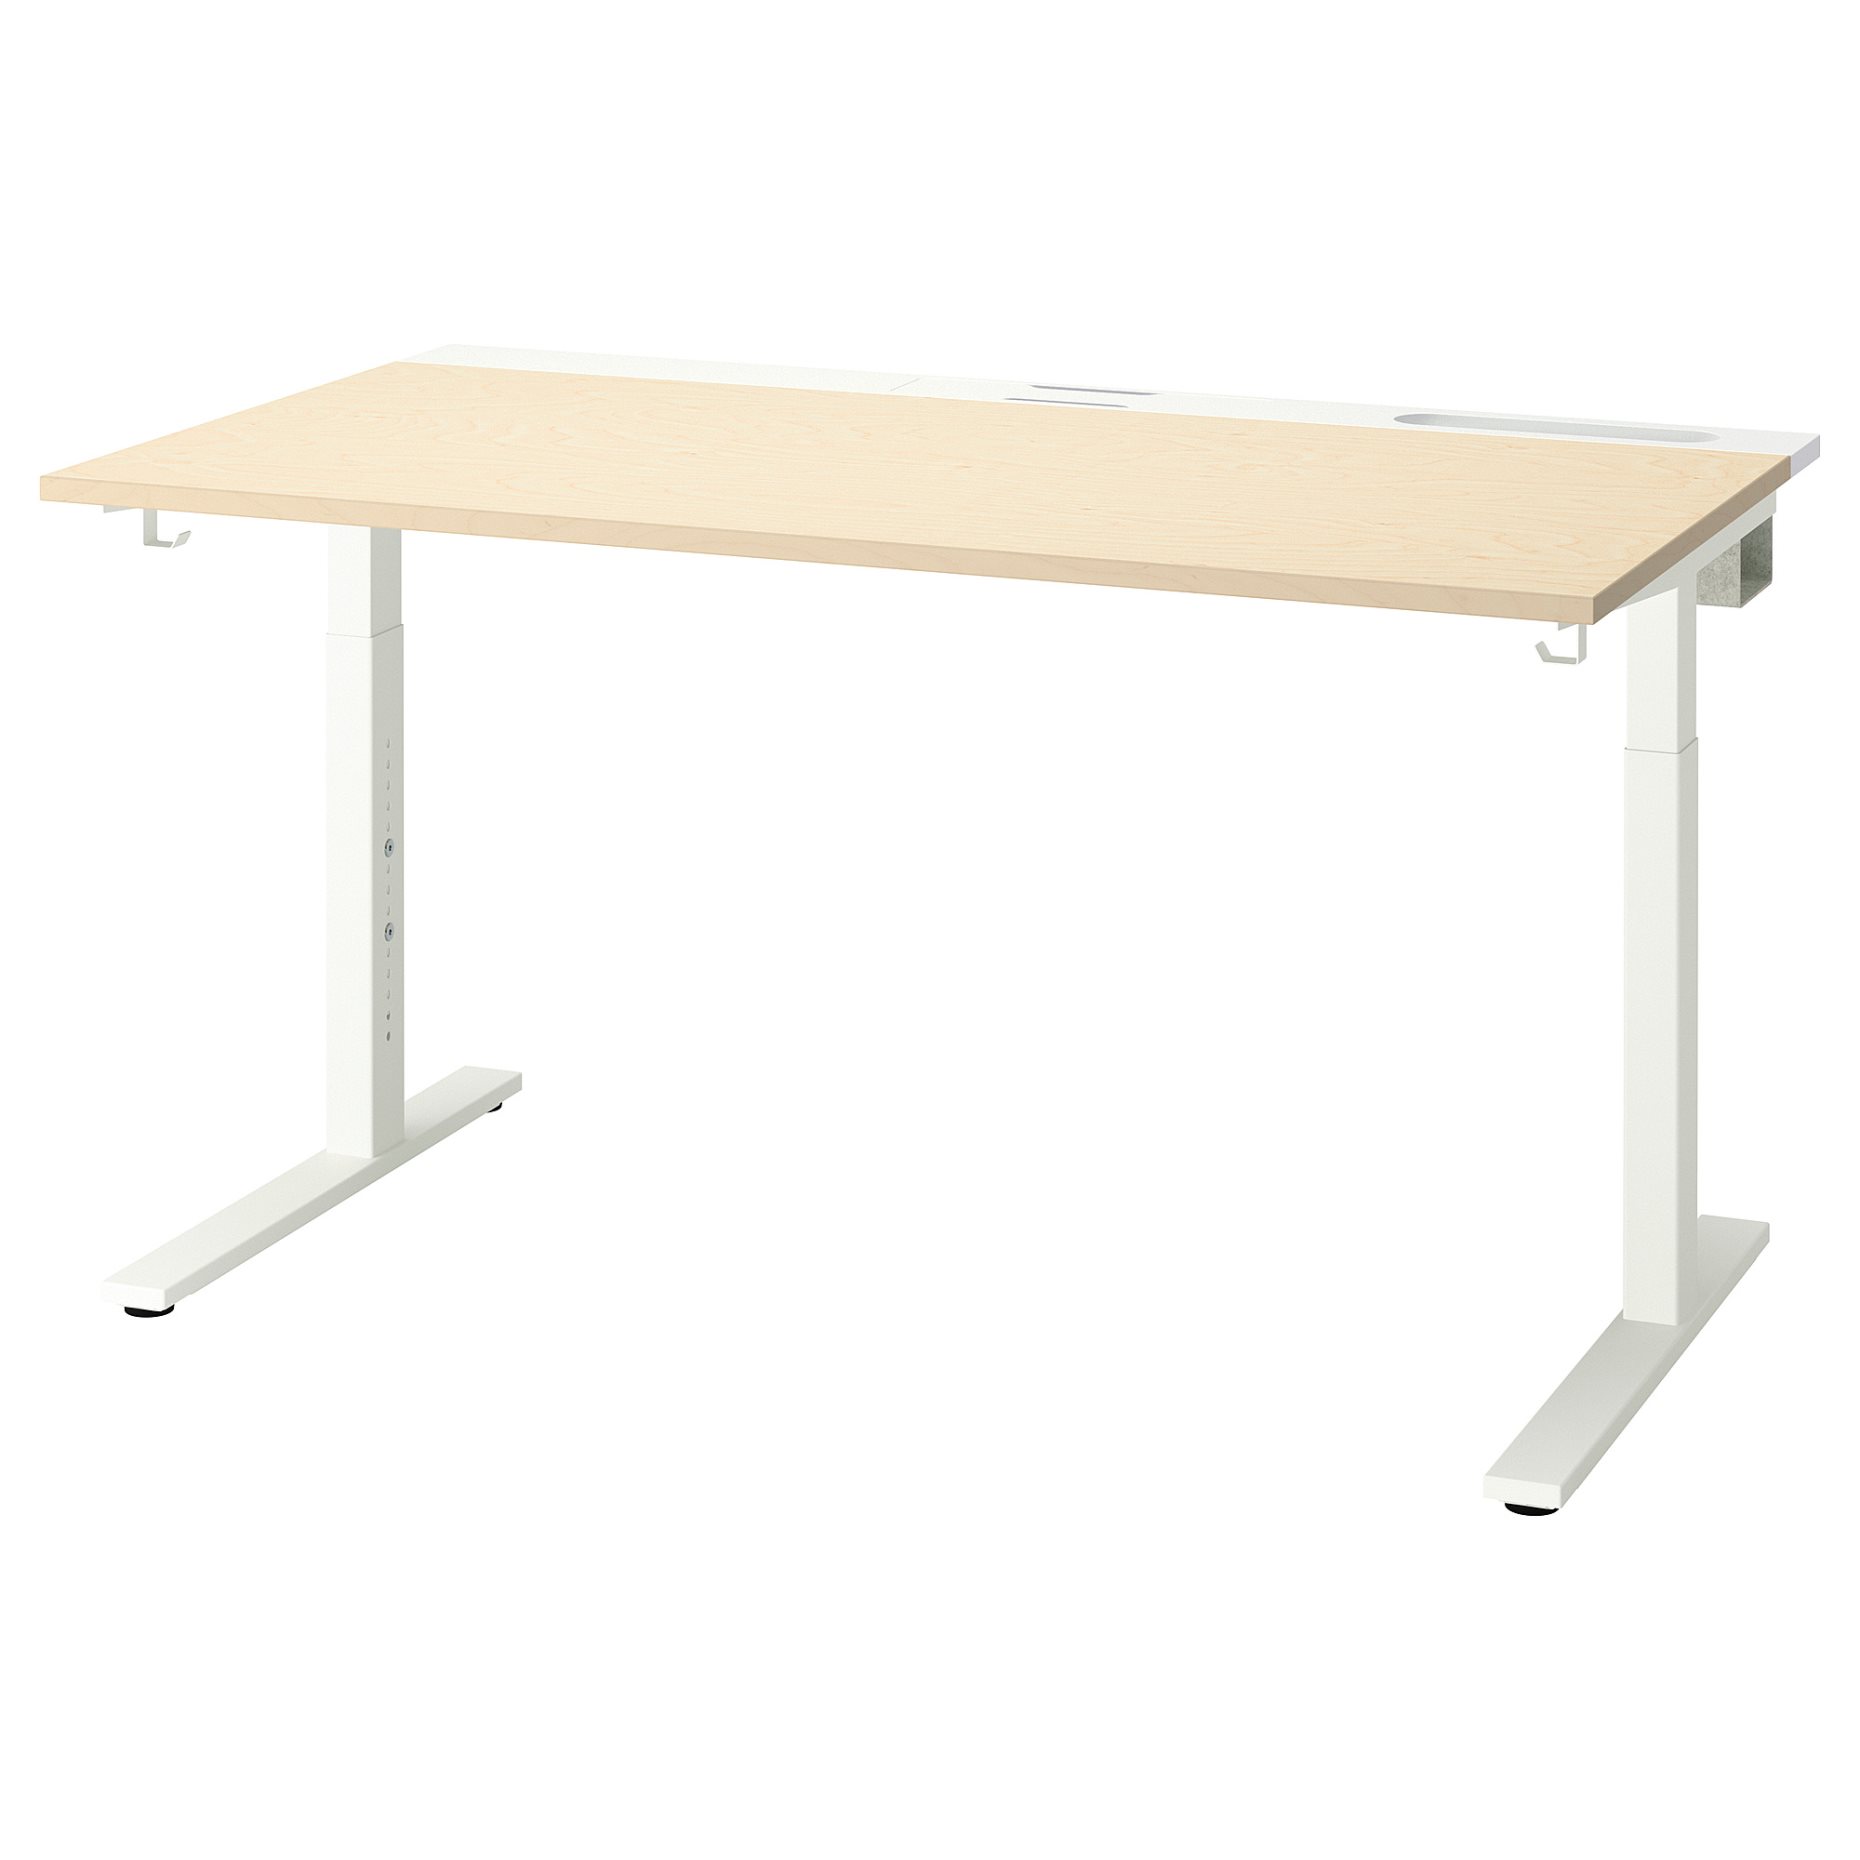 MITTZON, table top, 140x68 cm, 505.277.59